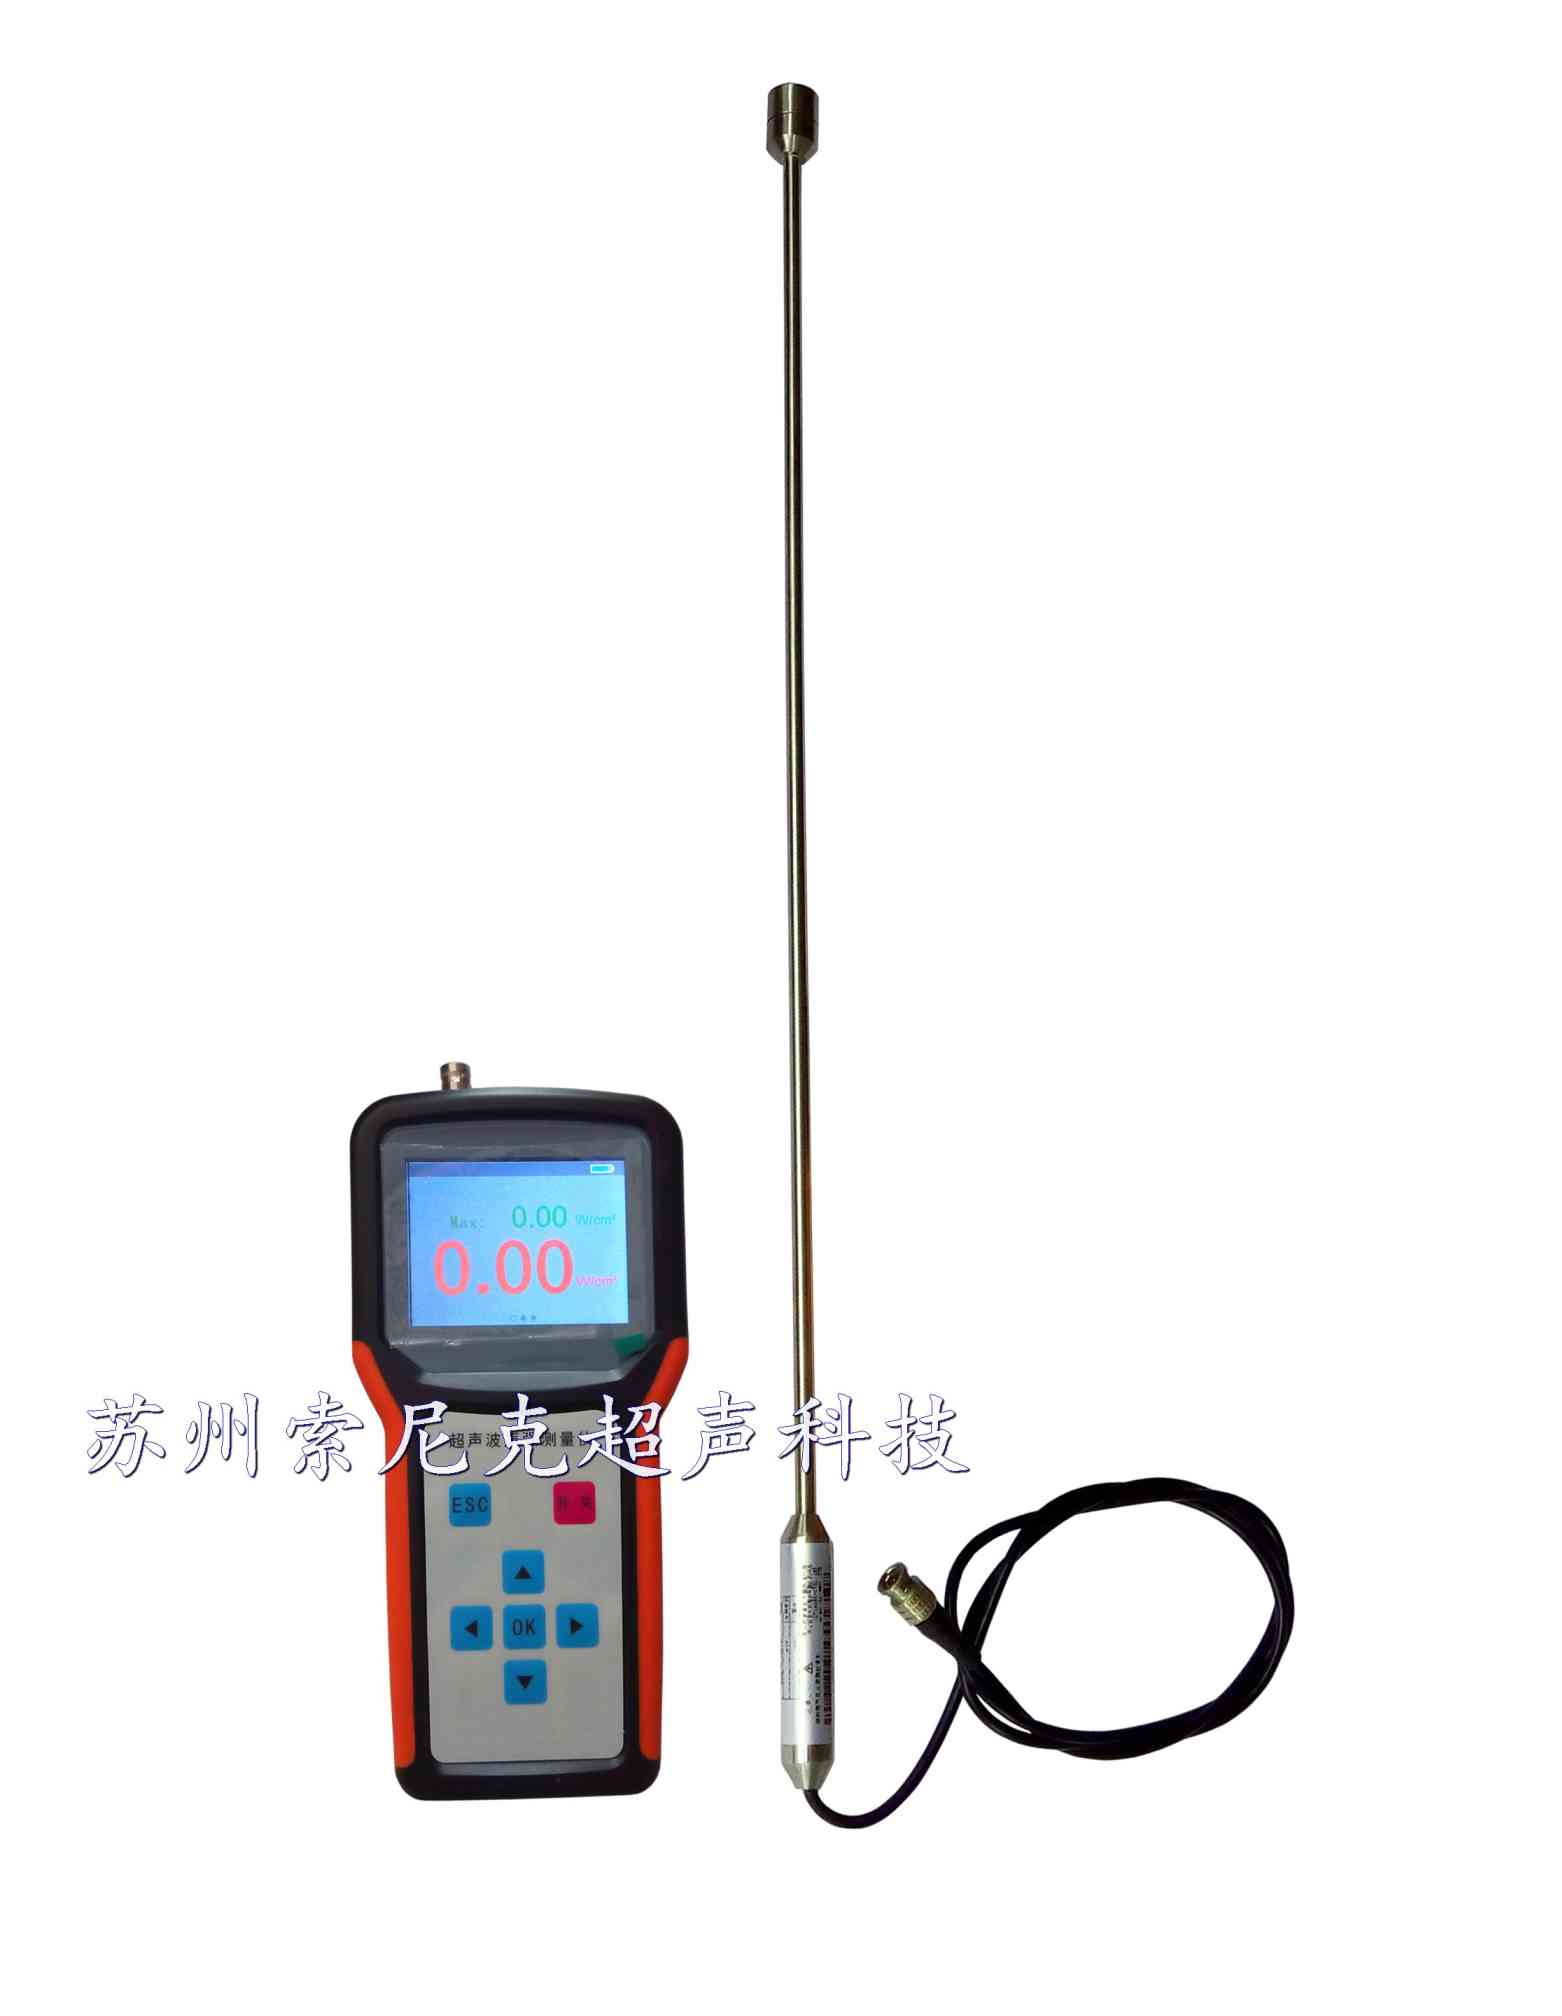 超声波声强测量仪供应,超声波声强测量仪图片,超声波声强测量仪用途 